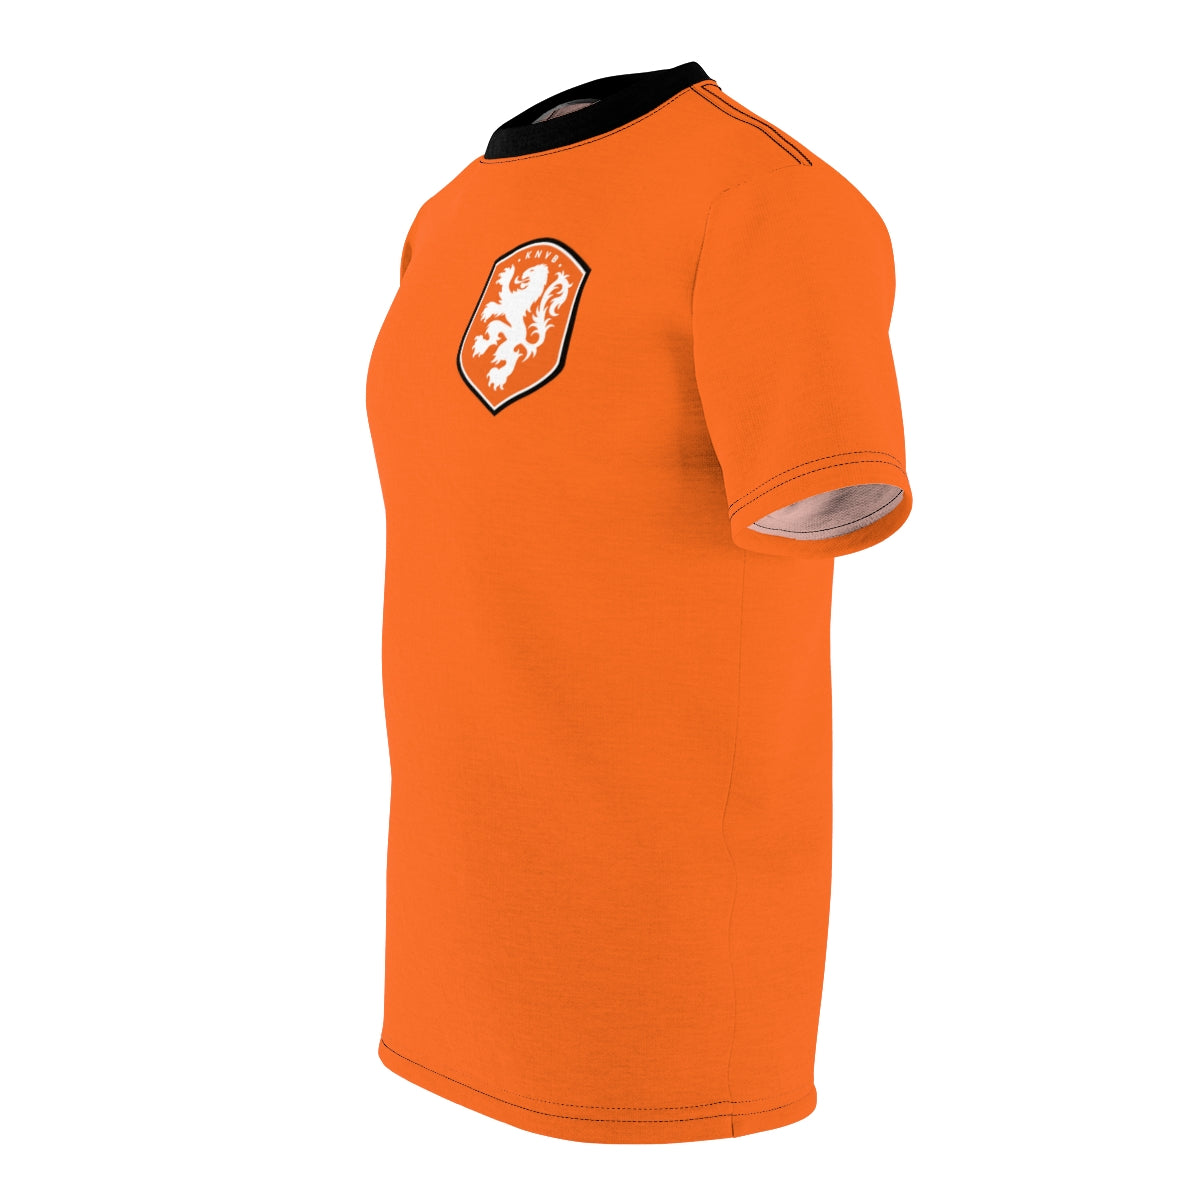 Netherlands Soccer National Team Holland KNVB Football Jersey Shirt Mens  Size S